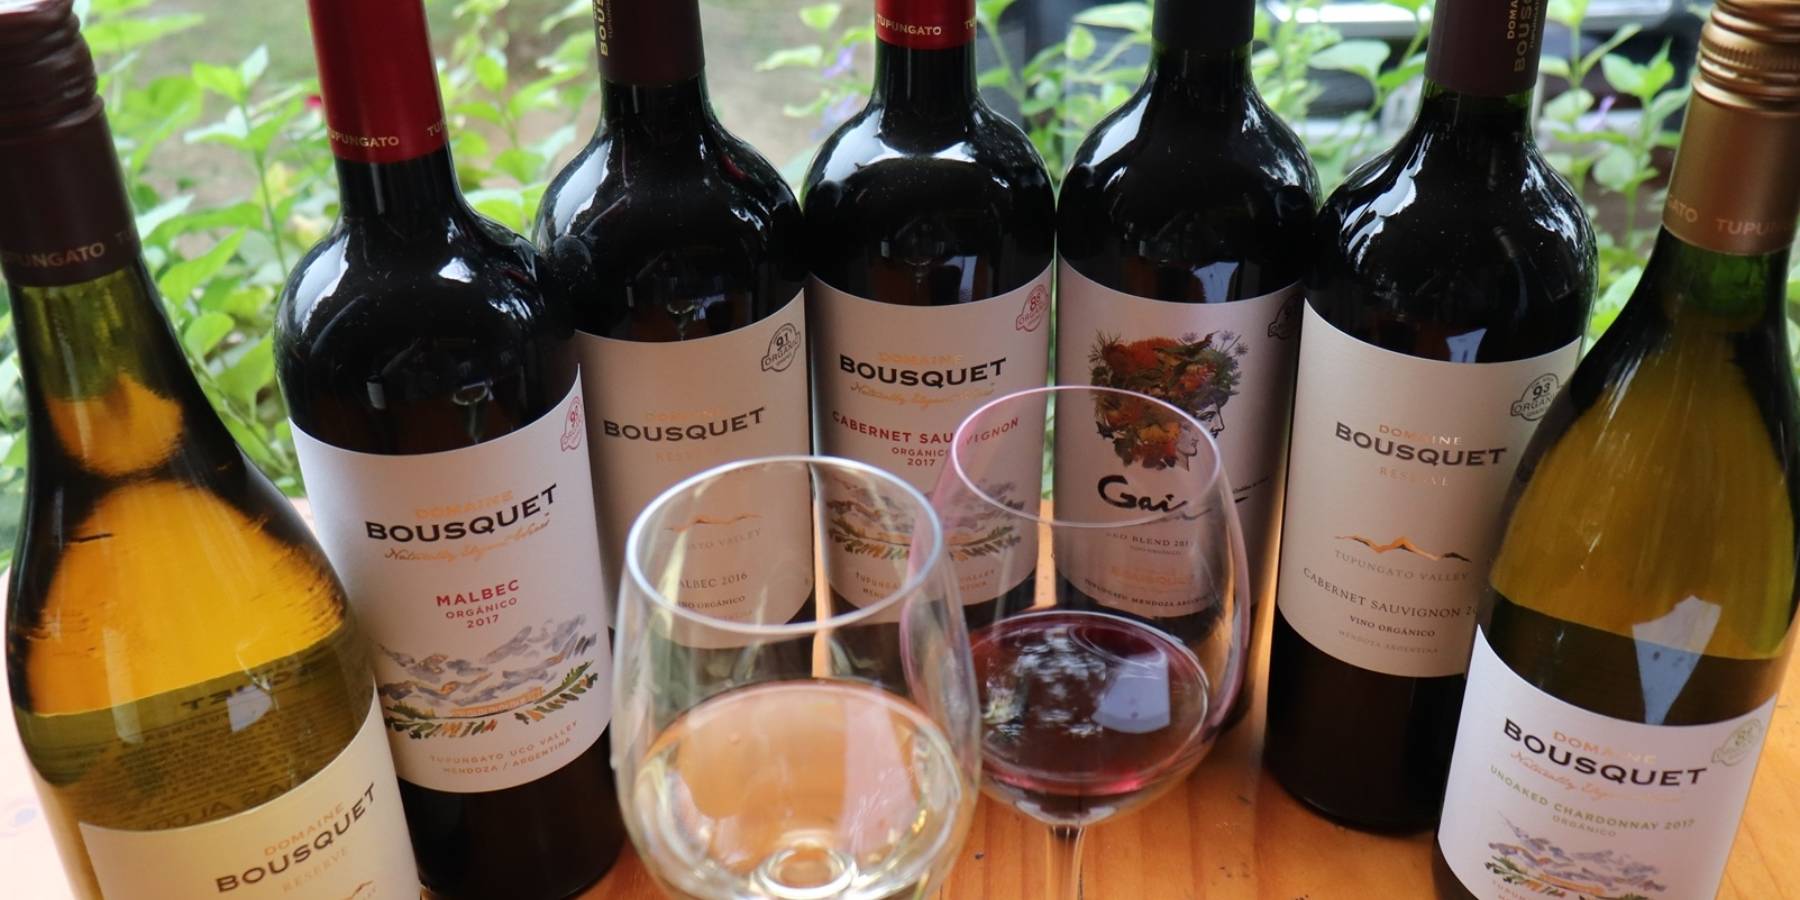 La marca de vinos Domaine Bousquet llega a Perú de la mano de El Alquimista